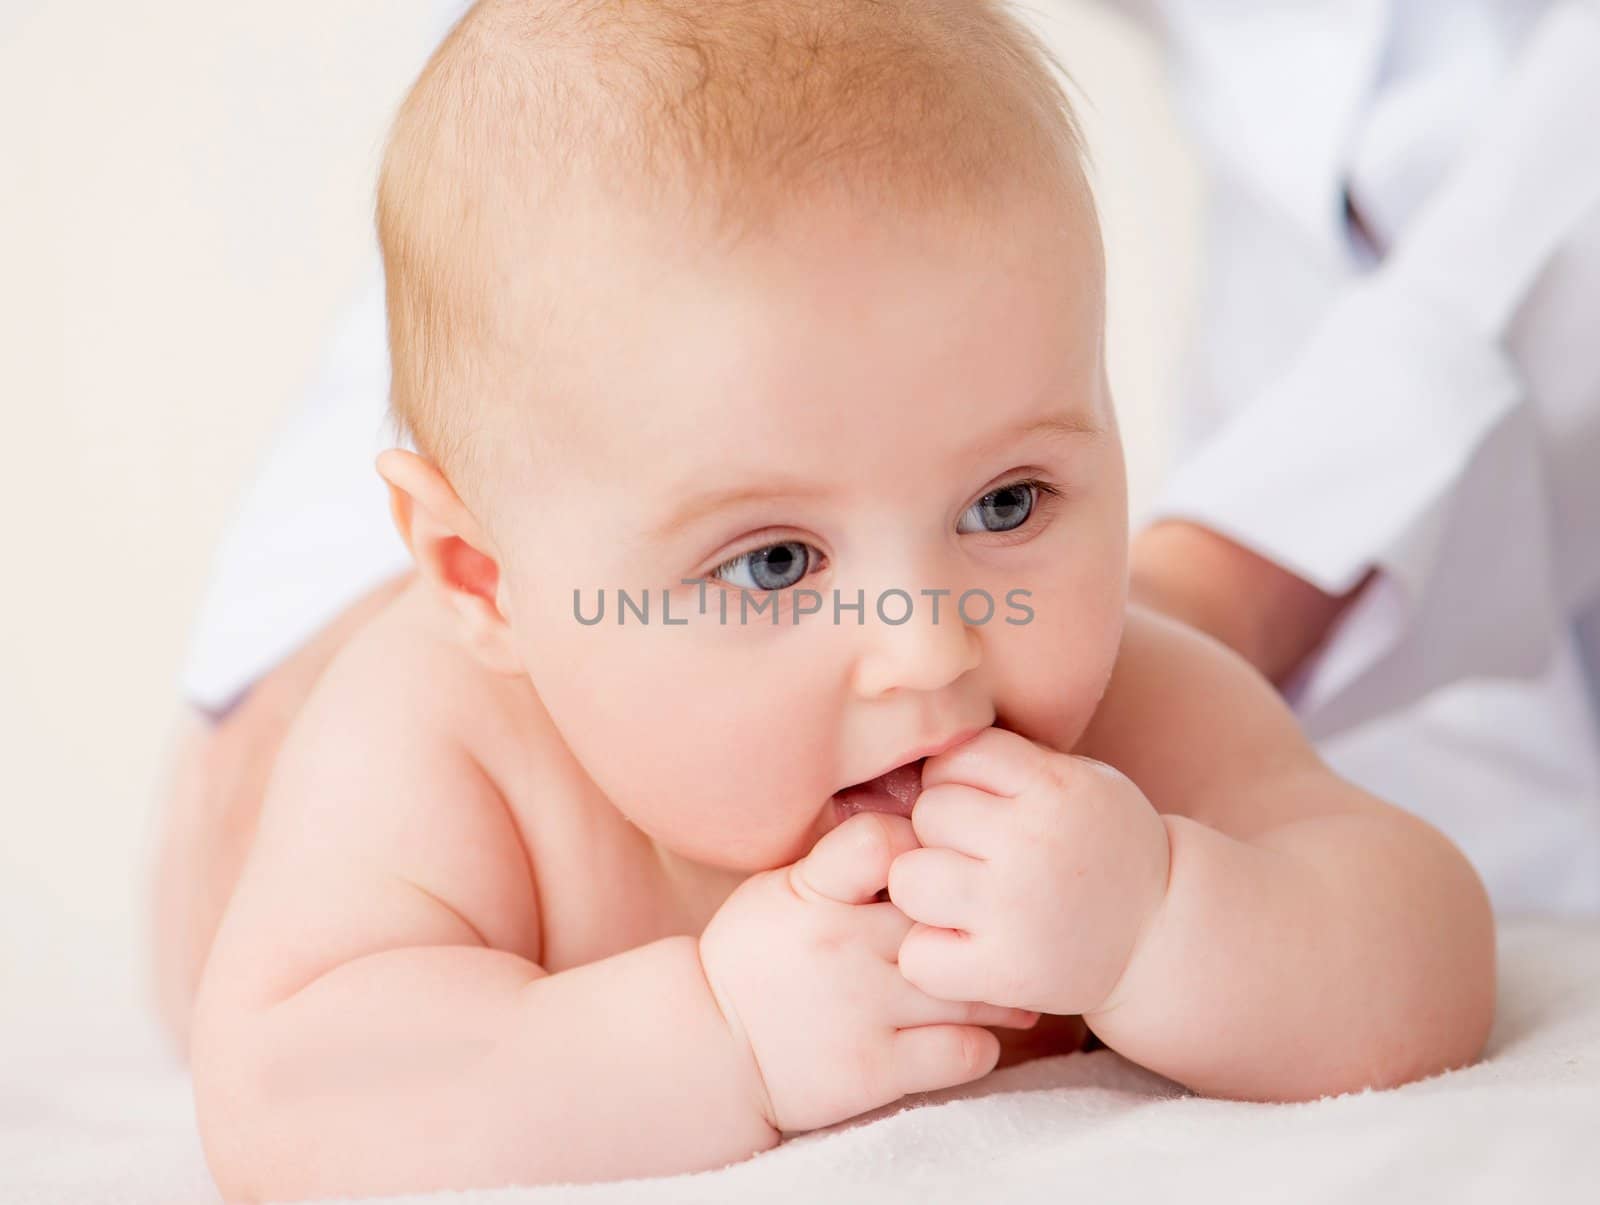 Doctorr's hands massaging little baby